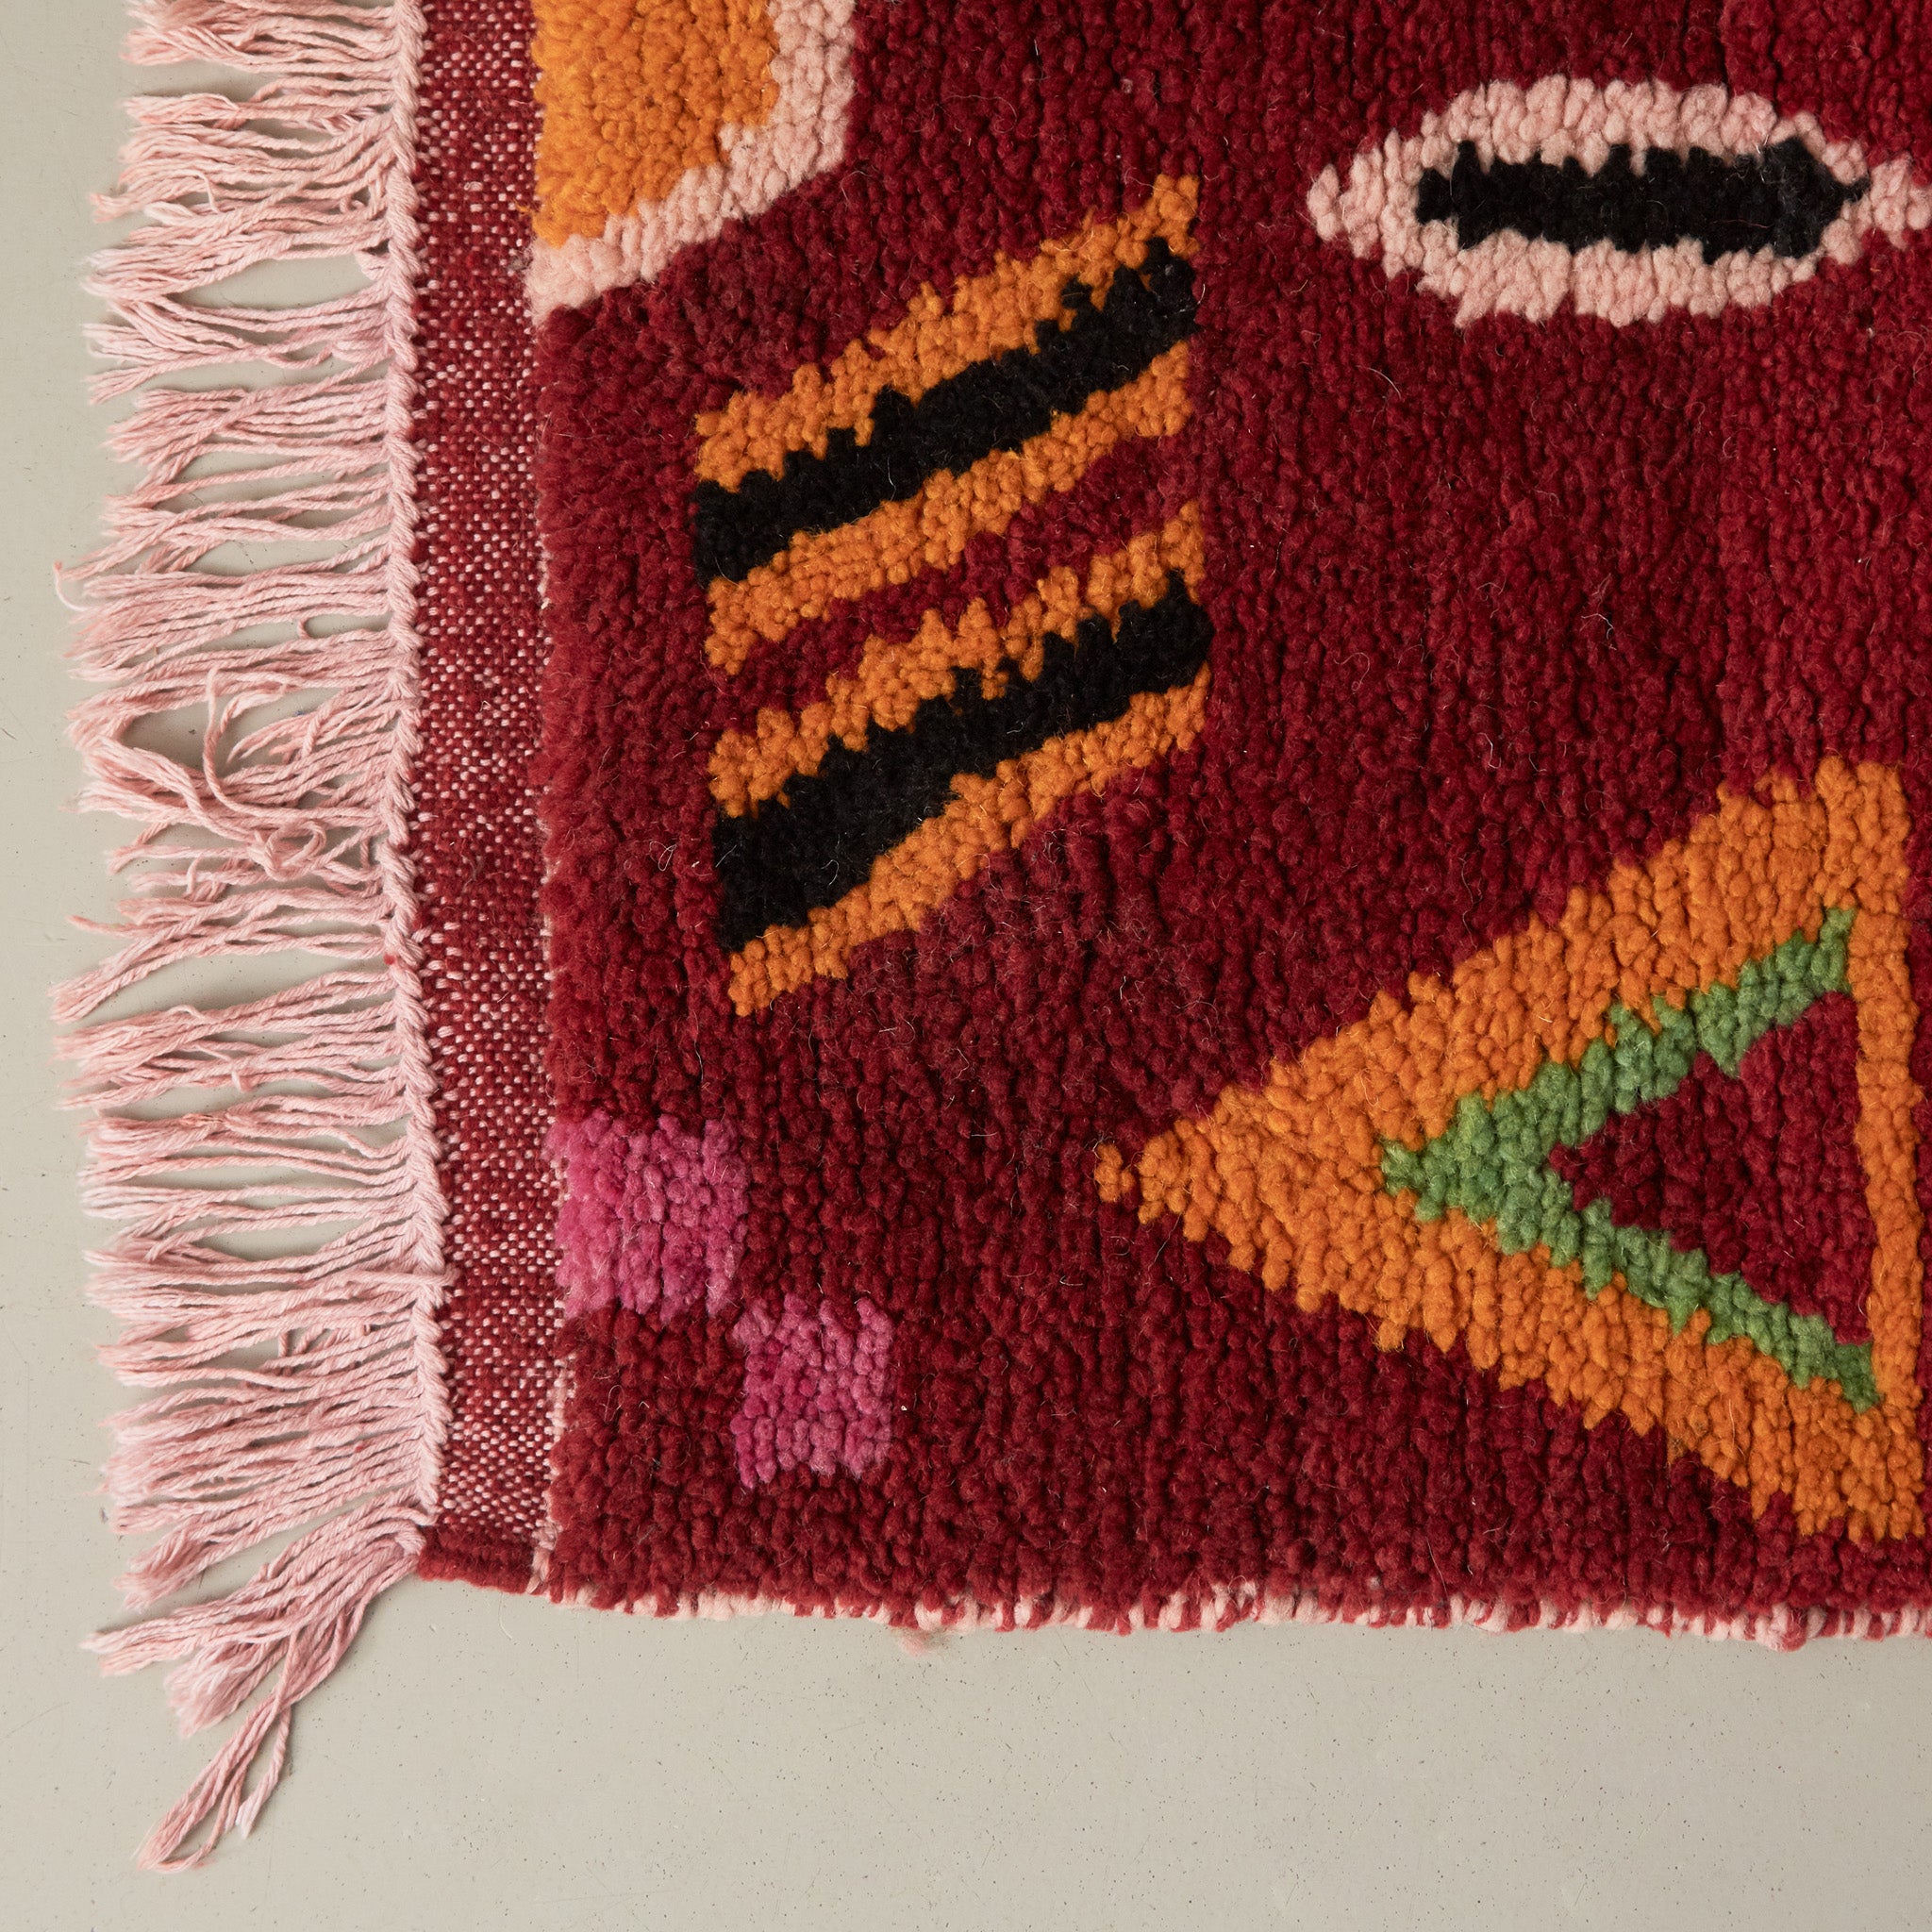 dettaglio della frangia e del pelo corto in lana rossa di un tappeto bouajaad con simboli tradizionali gialli neri verdi